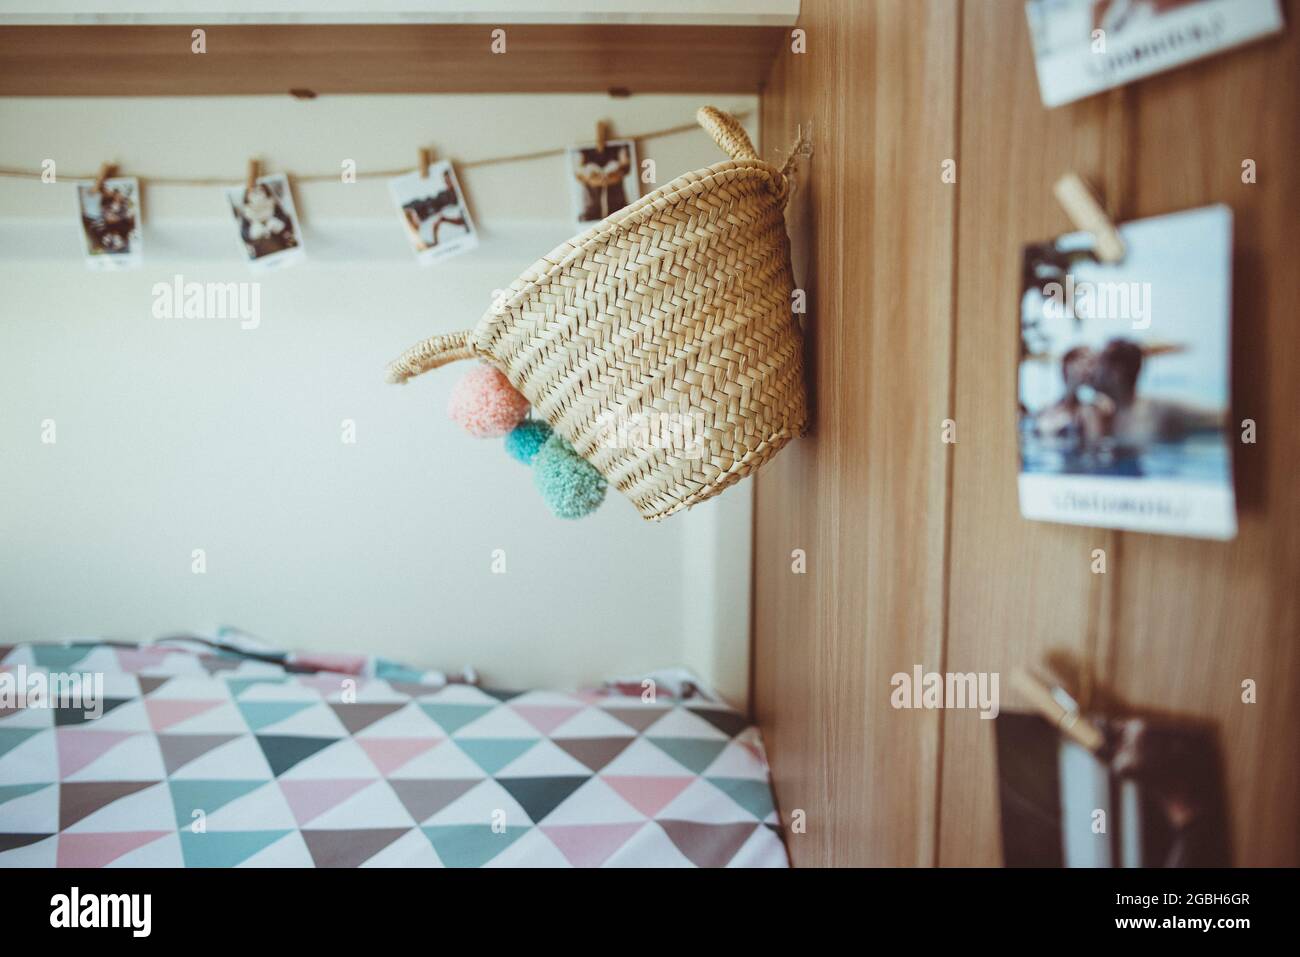 Fotos und ein Korb, der in einem Wohnmobil an einer Wand hängt Stockfoto